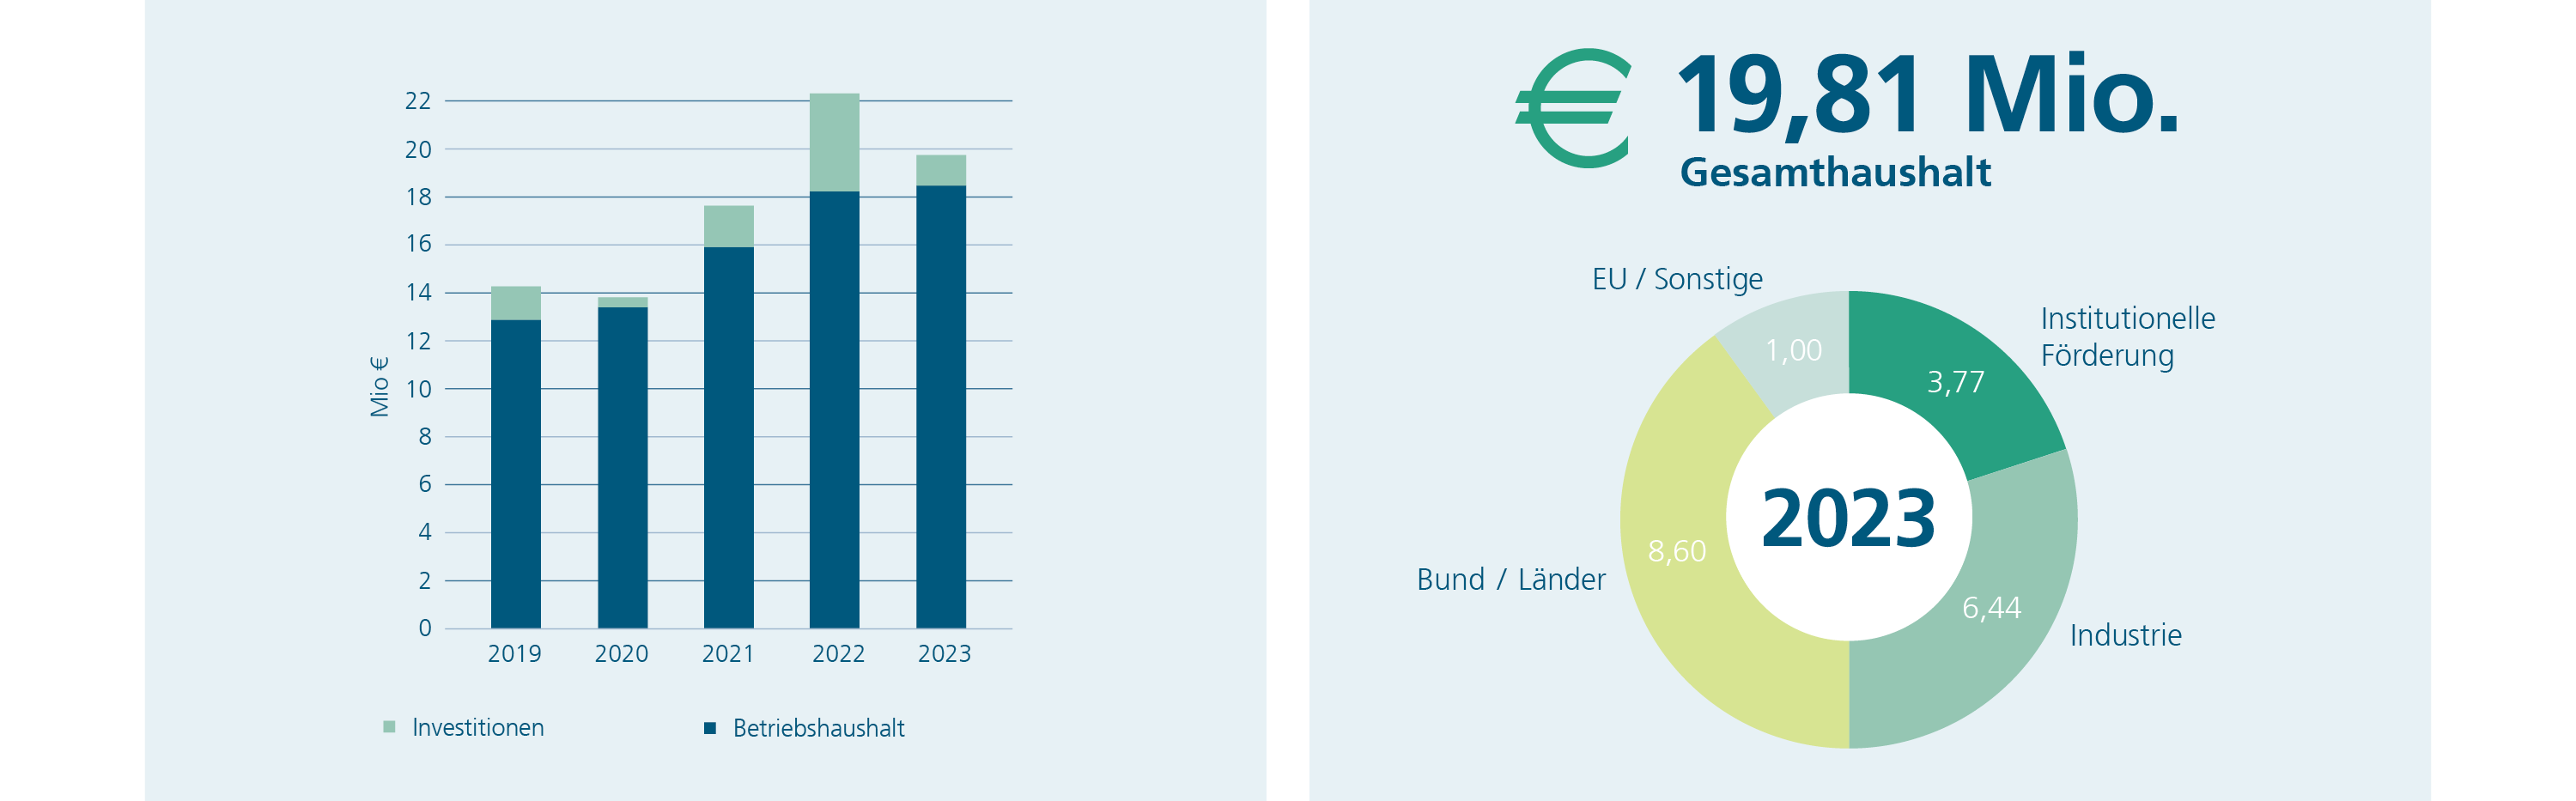 Entwicklung Gesamthaushalt des Fraunhofer IST 2019-2023 sowie die Erträge 2023